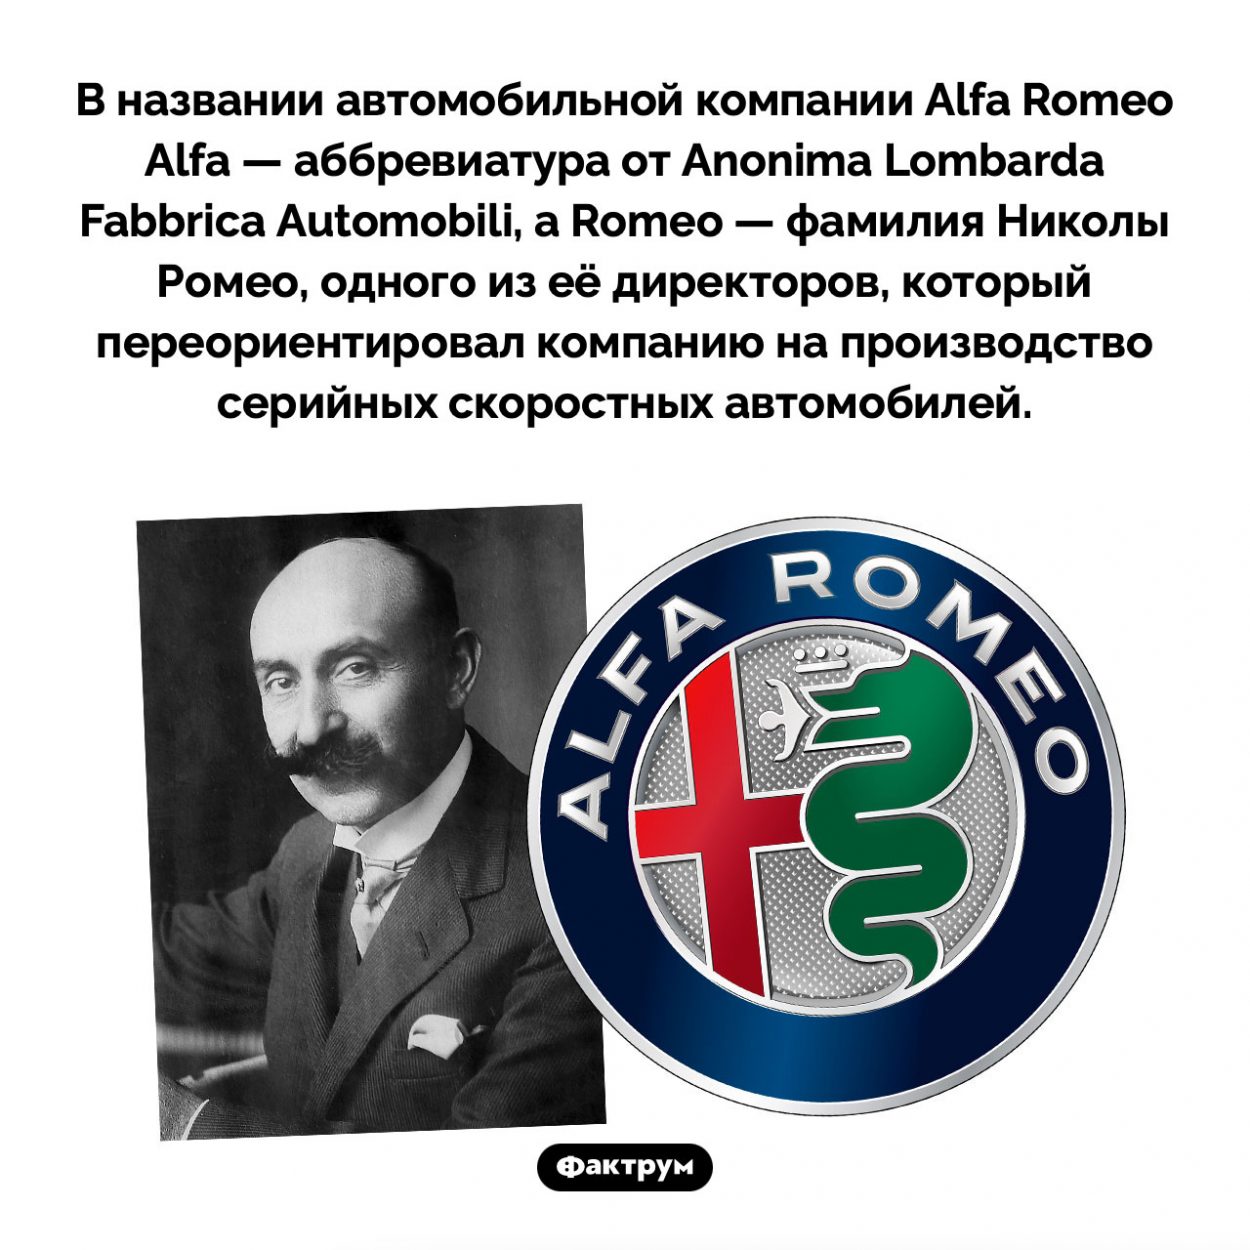 Происхождение названия компании Alfa Romeo. В названии автомобильной компании Alfa Romeo Alfa — аббревиатура от Anonima Lombarda Fabbrica Automobili, а Romeo — фамилия Николы Ромео, одного из её директоров, который переориентировал компанию на производство серийных скоростных автомобилей.